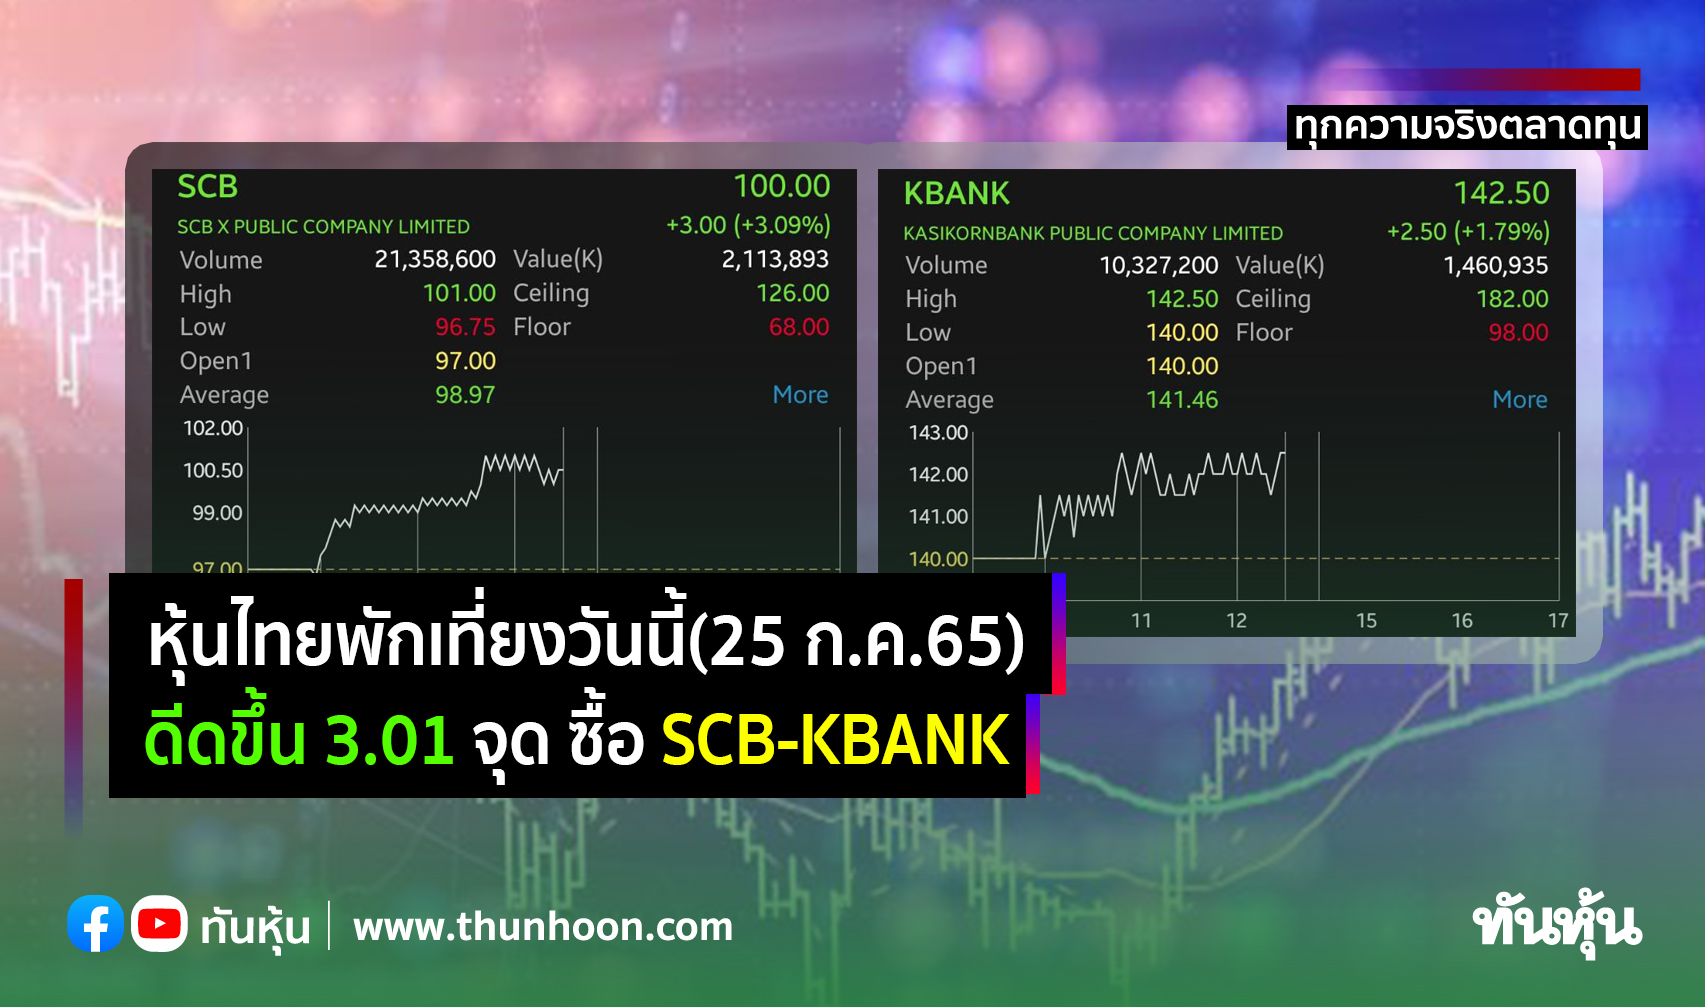 หุ้นไทยพักเที่ยงวันนี้(25 ก.ค.65) ดีดขึ้น 3.01 จุด ซื้อ SCB-KBANK 